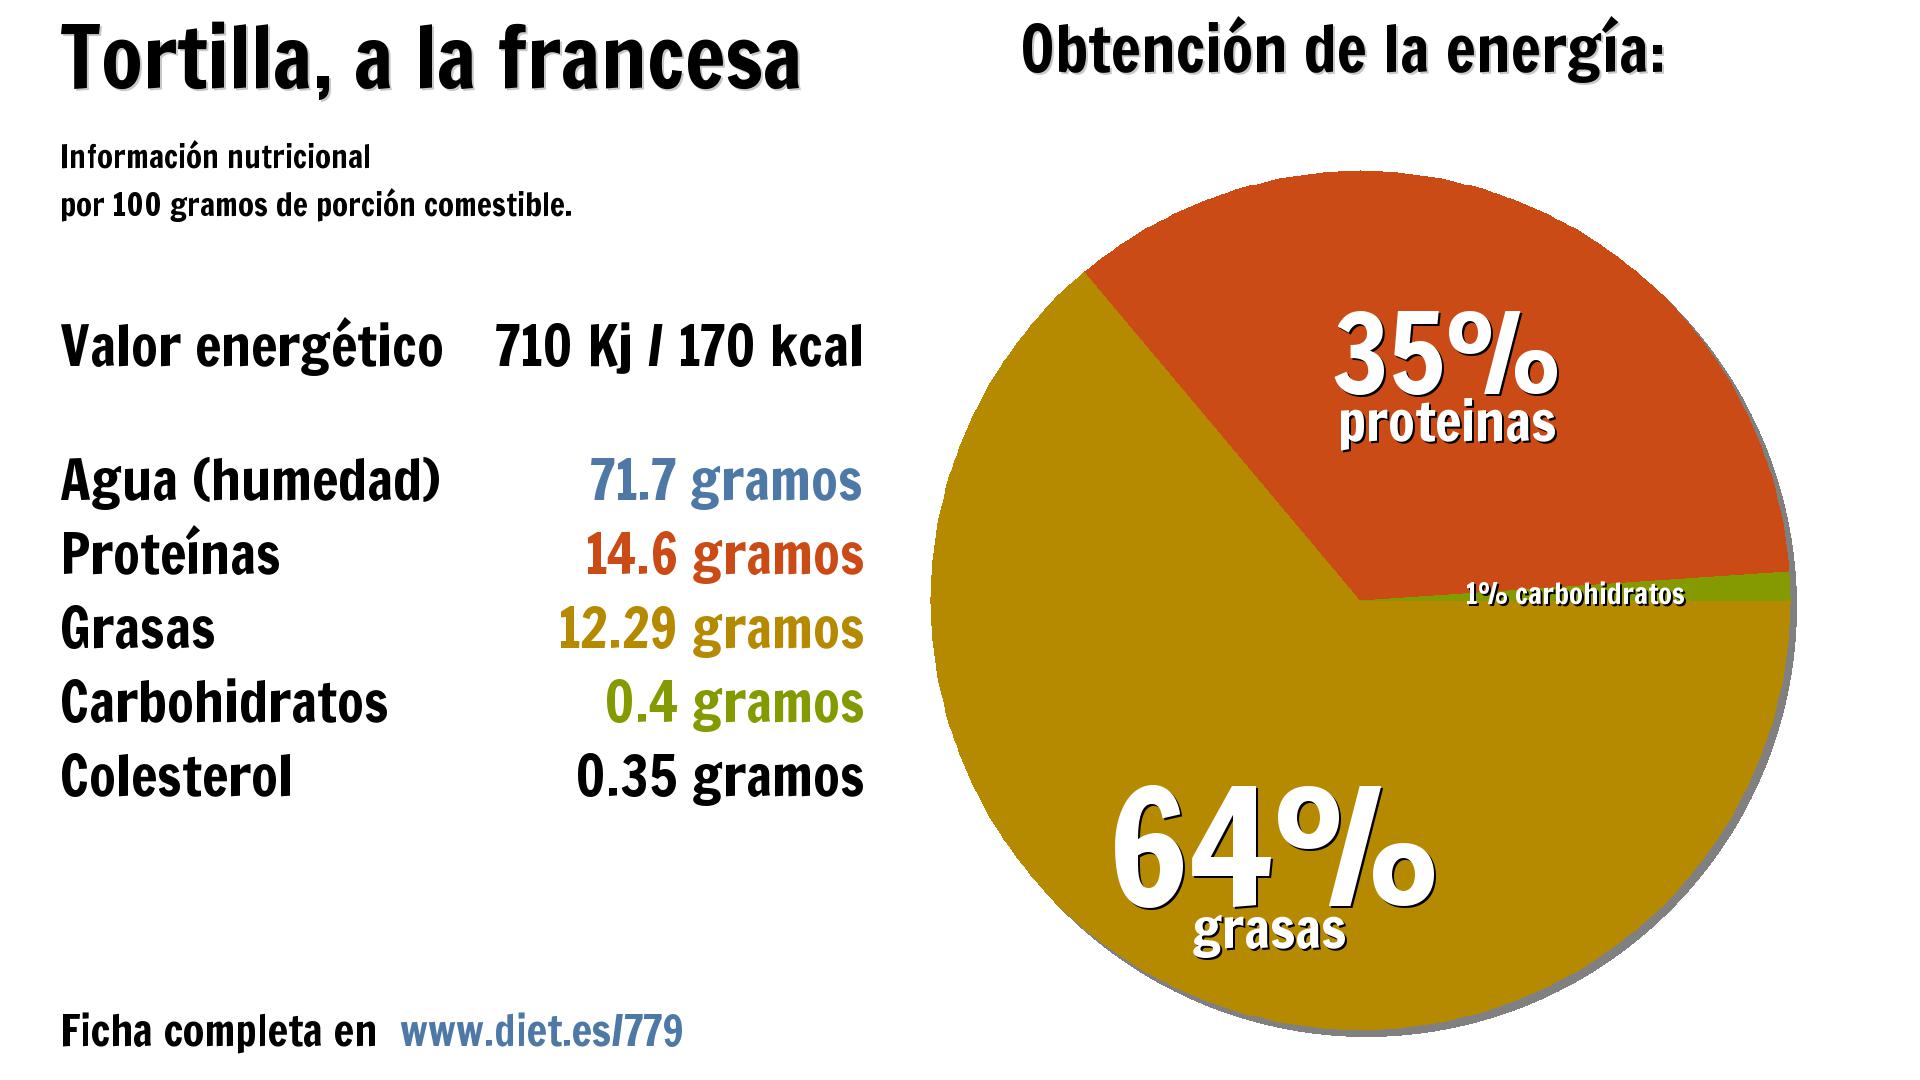 Tortilla, a la francesa: energía 710 Kj, agua 72 g., proteínas 15 g. y grasas 12 g.